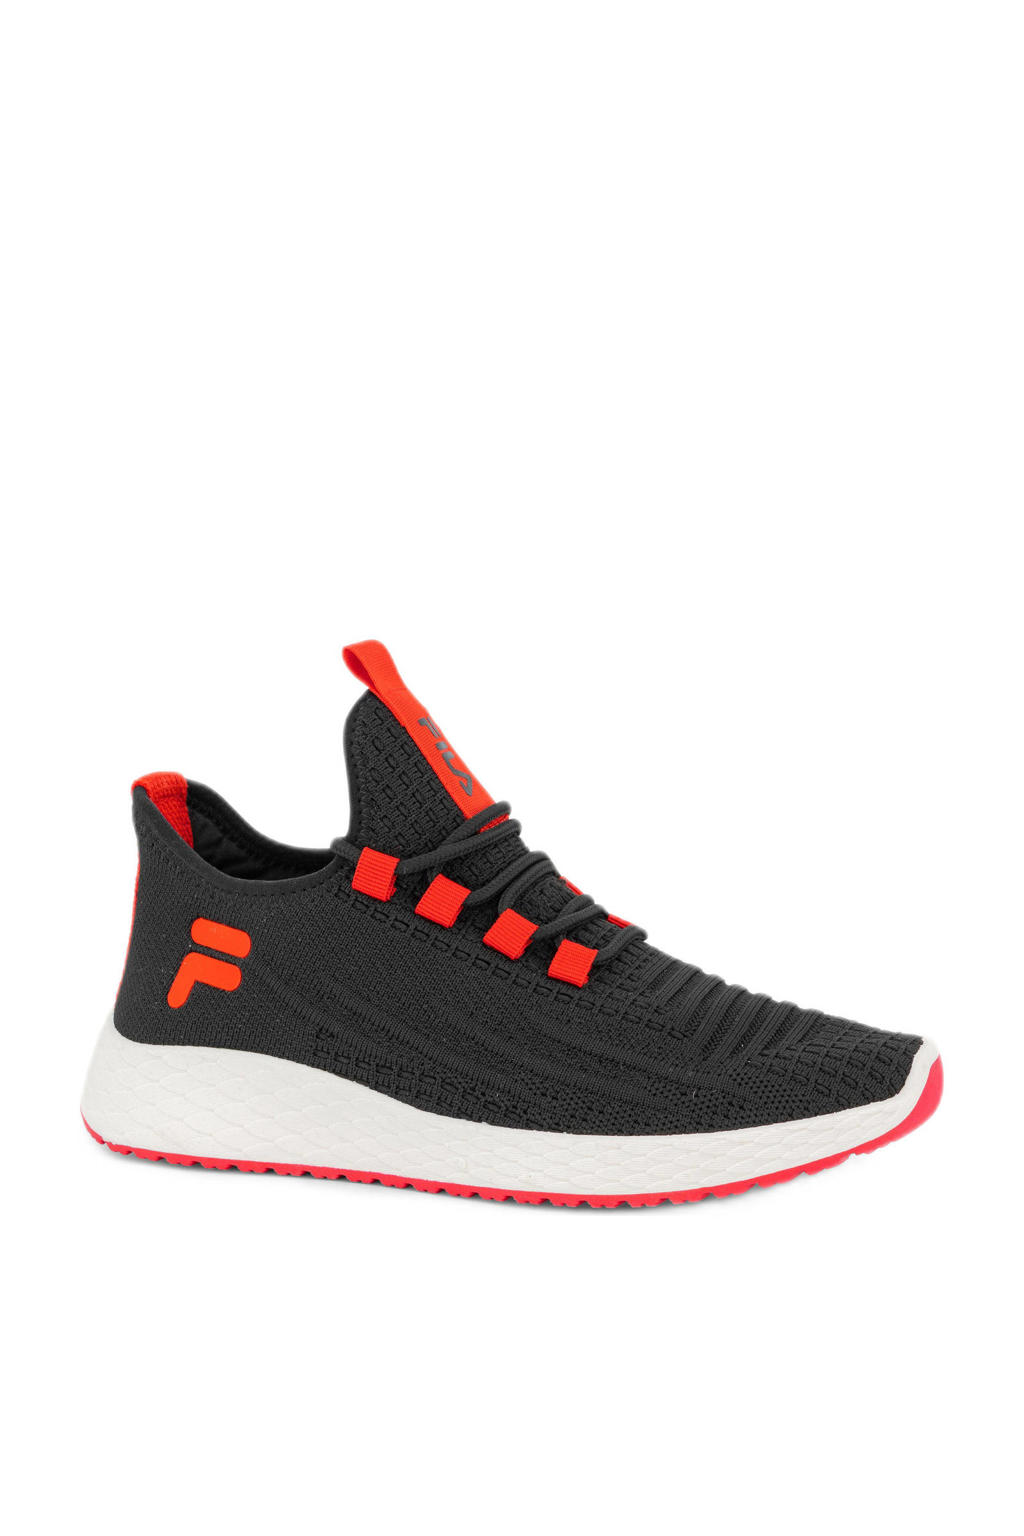 Fila   sneakers zwart/rood